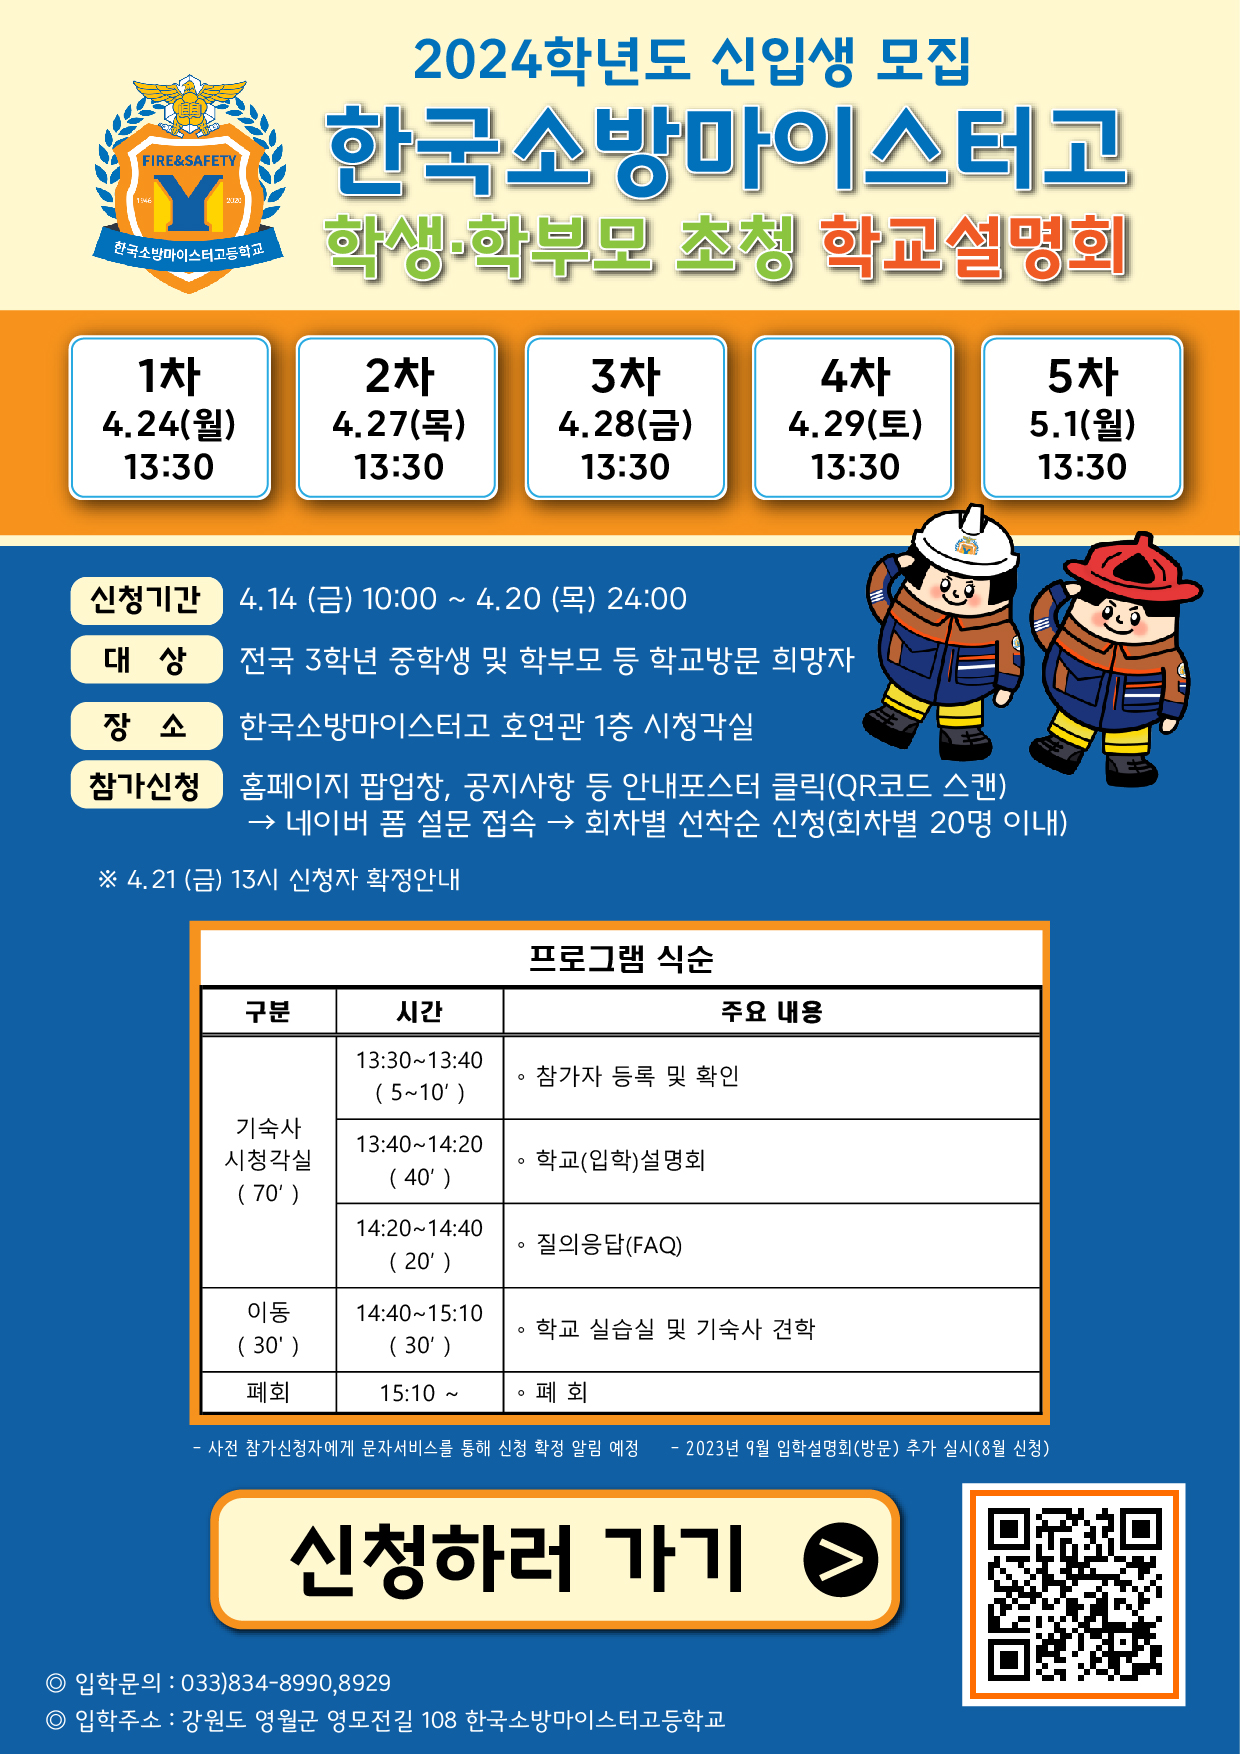 한국소방마이스터고등학교 학교설명회 안내 포스터